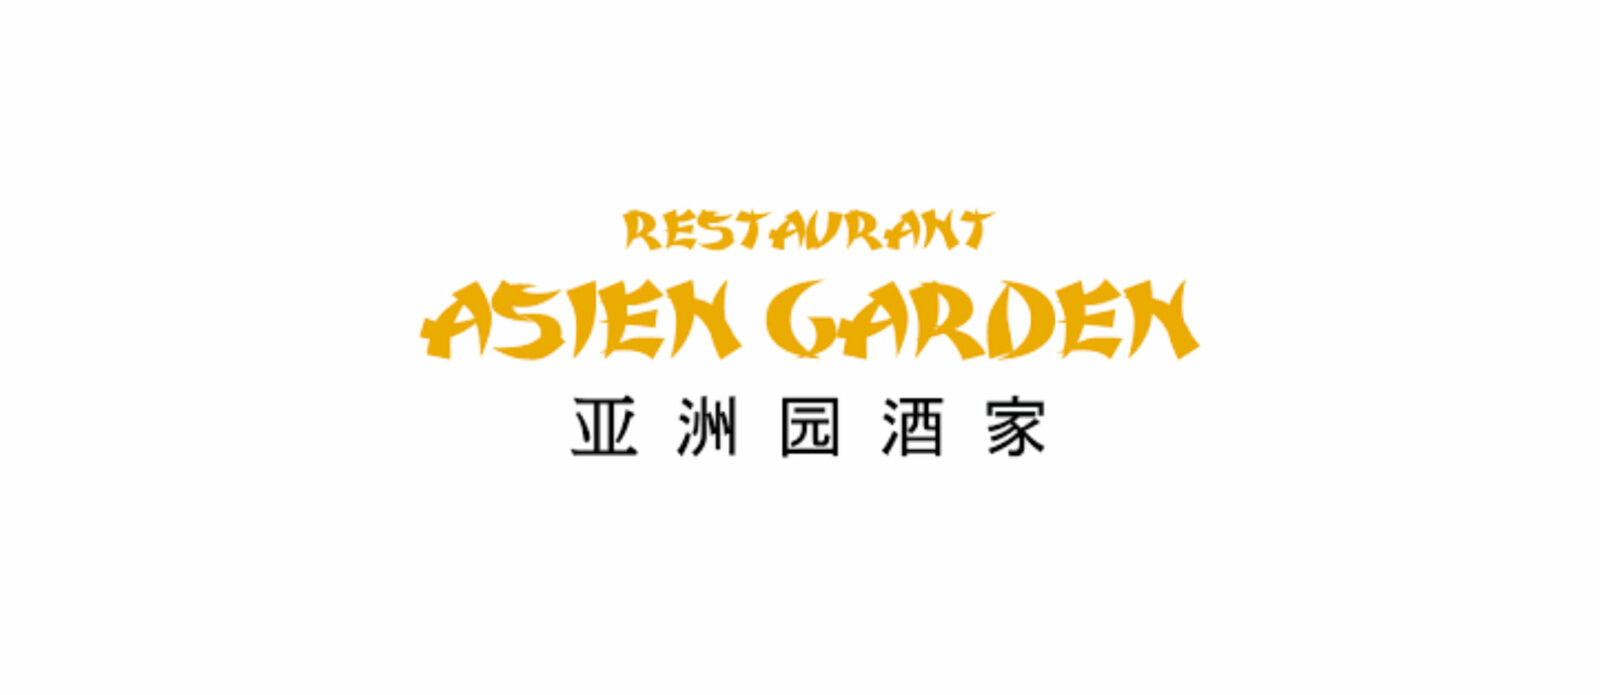 Asien Garden